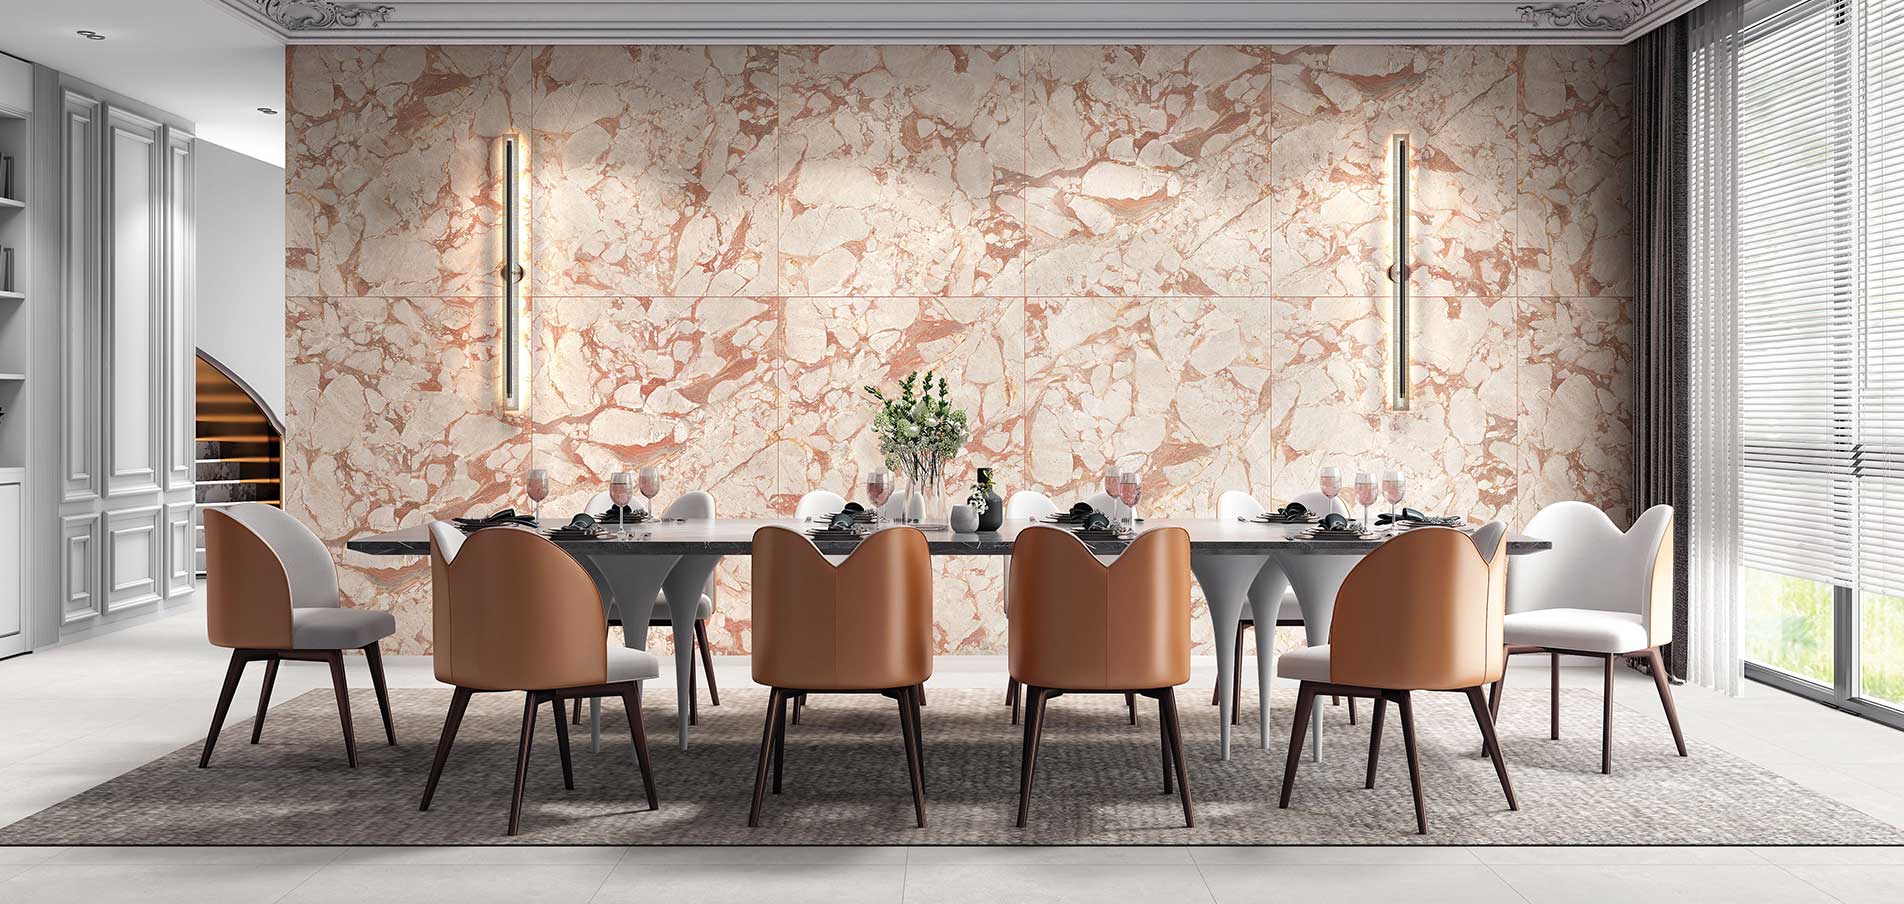 A Peachy Affair in Tile Design